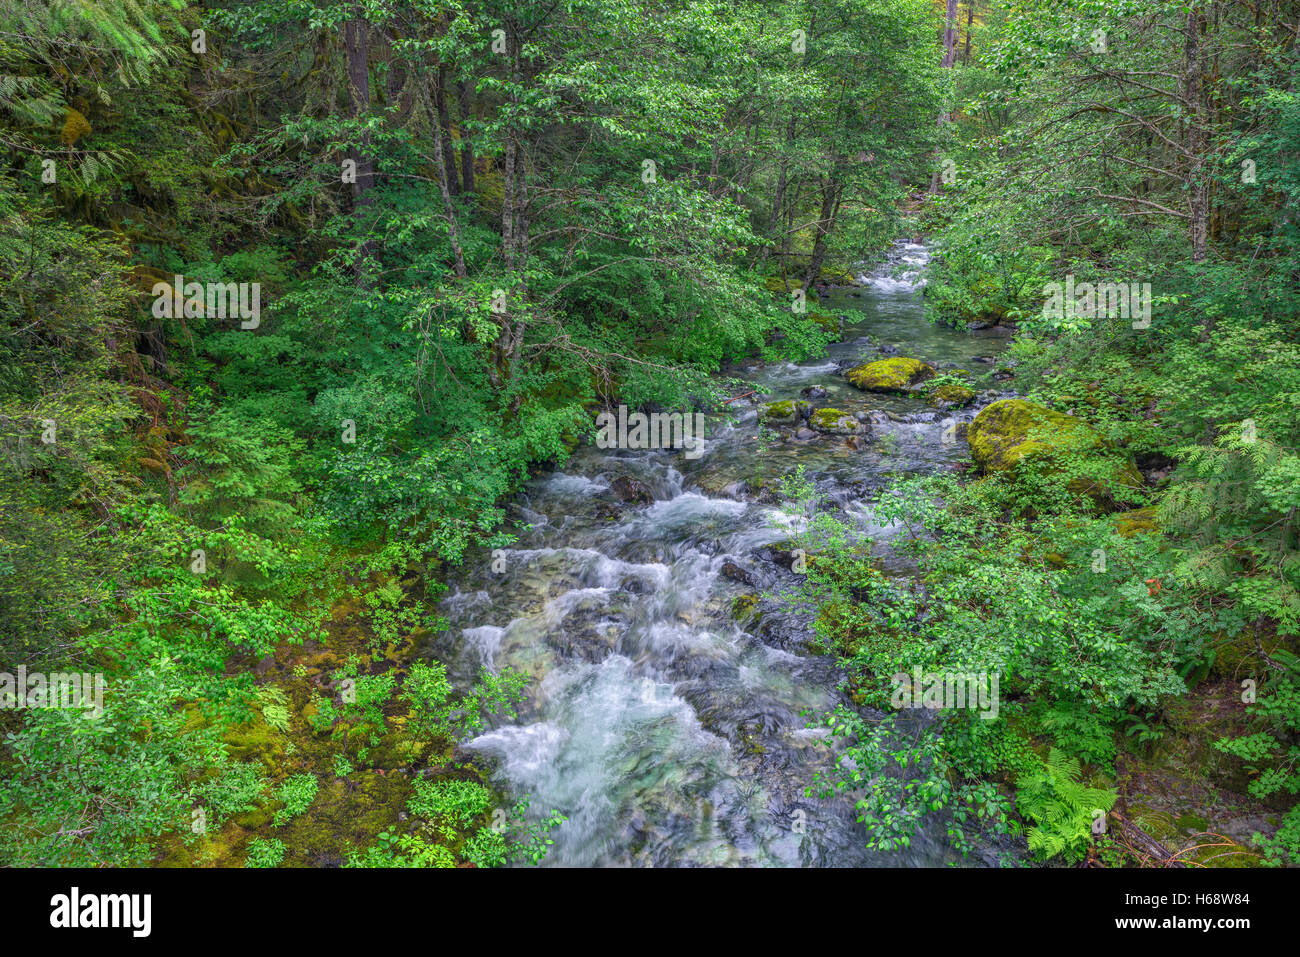 USA, Ohio, forêt nationale de Willamette, Opal Creek Scenic Zone de loisirs, Hache Creek entouré de forêt luxuriante. Banque D'Images